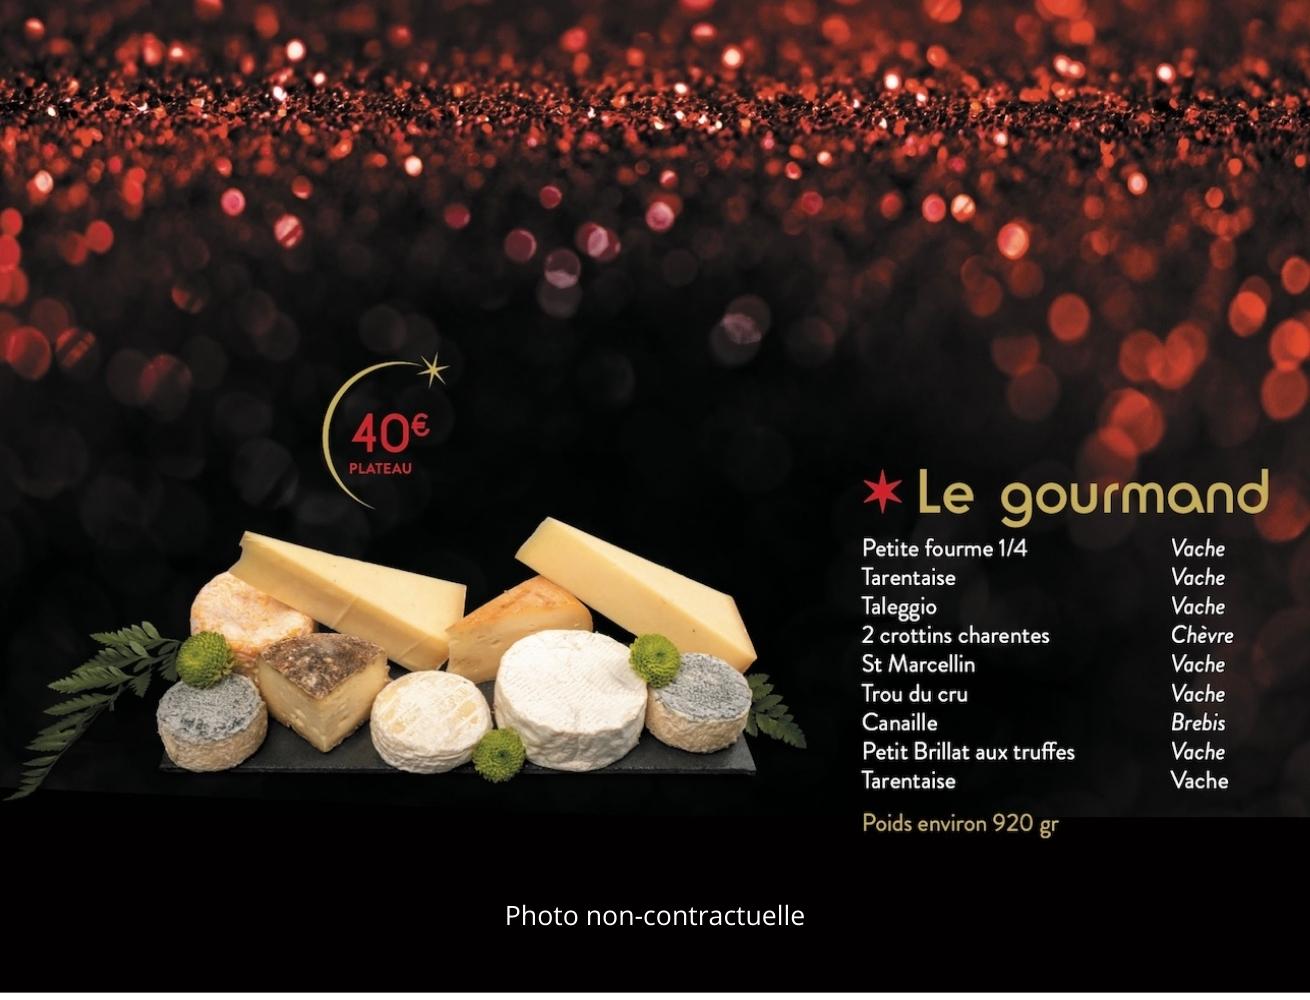 Le Gourmand Plateaux de fromages Noel